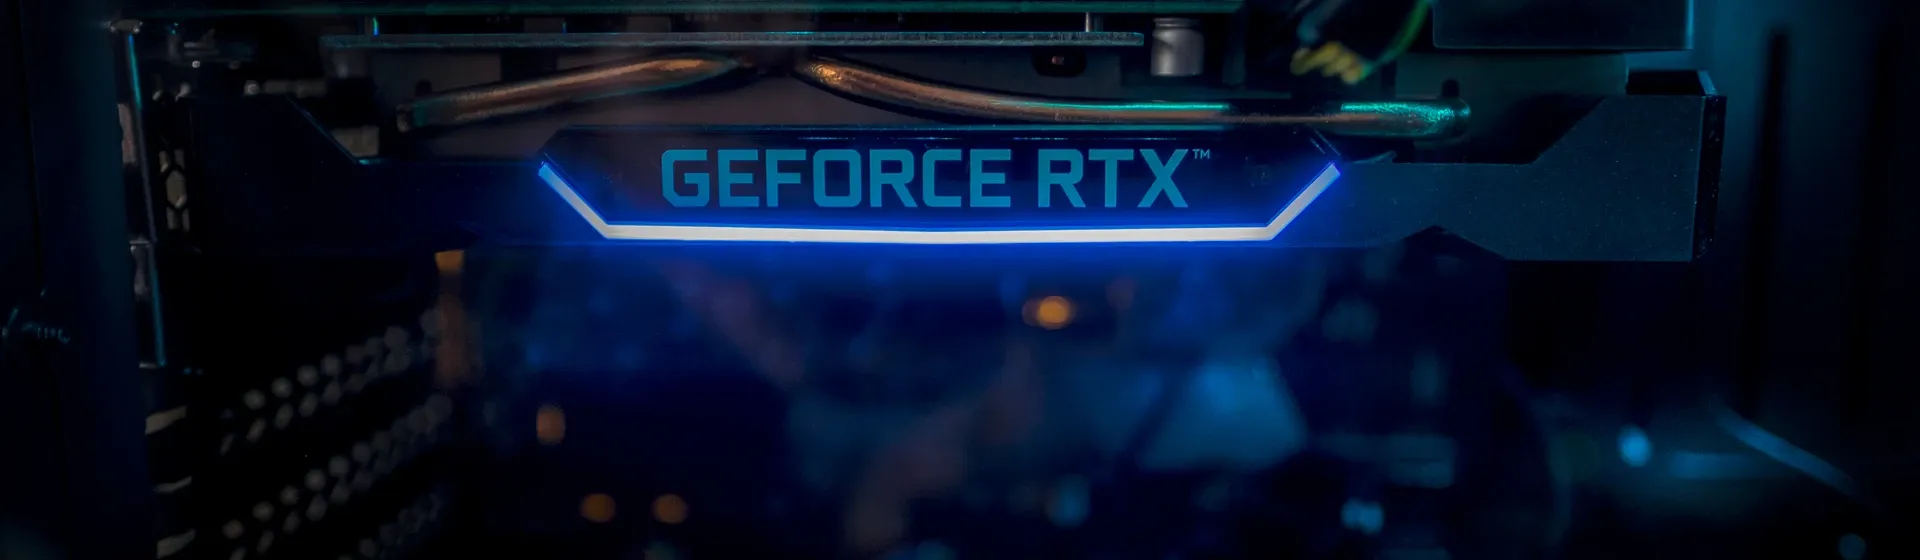 Interior de computador com destaque para placa de vídeo RTX com a inscrição "GEFORCE RTX" e LED azul  